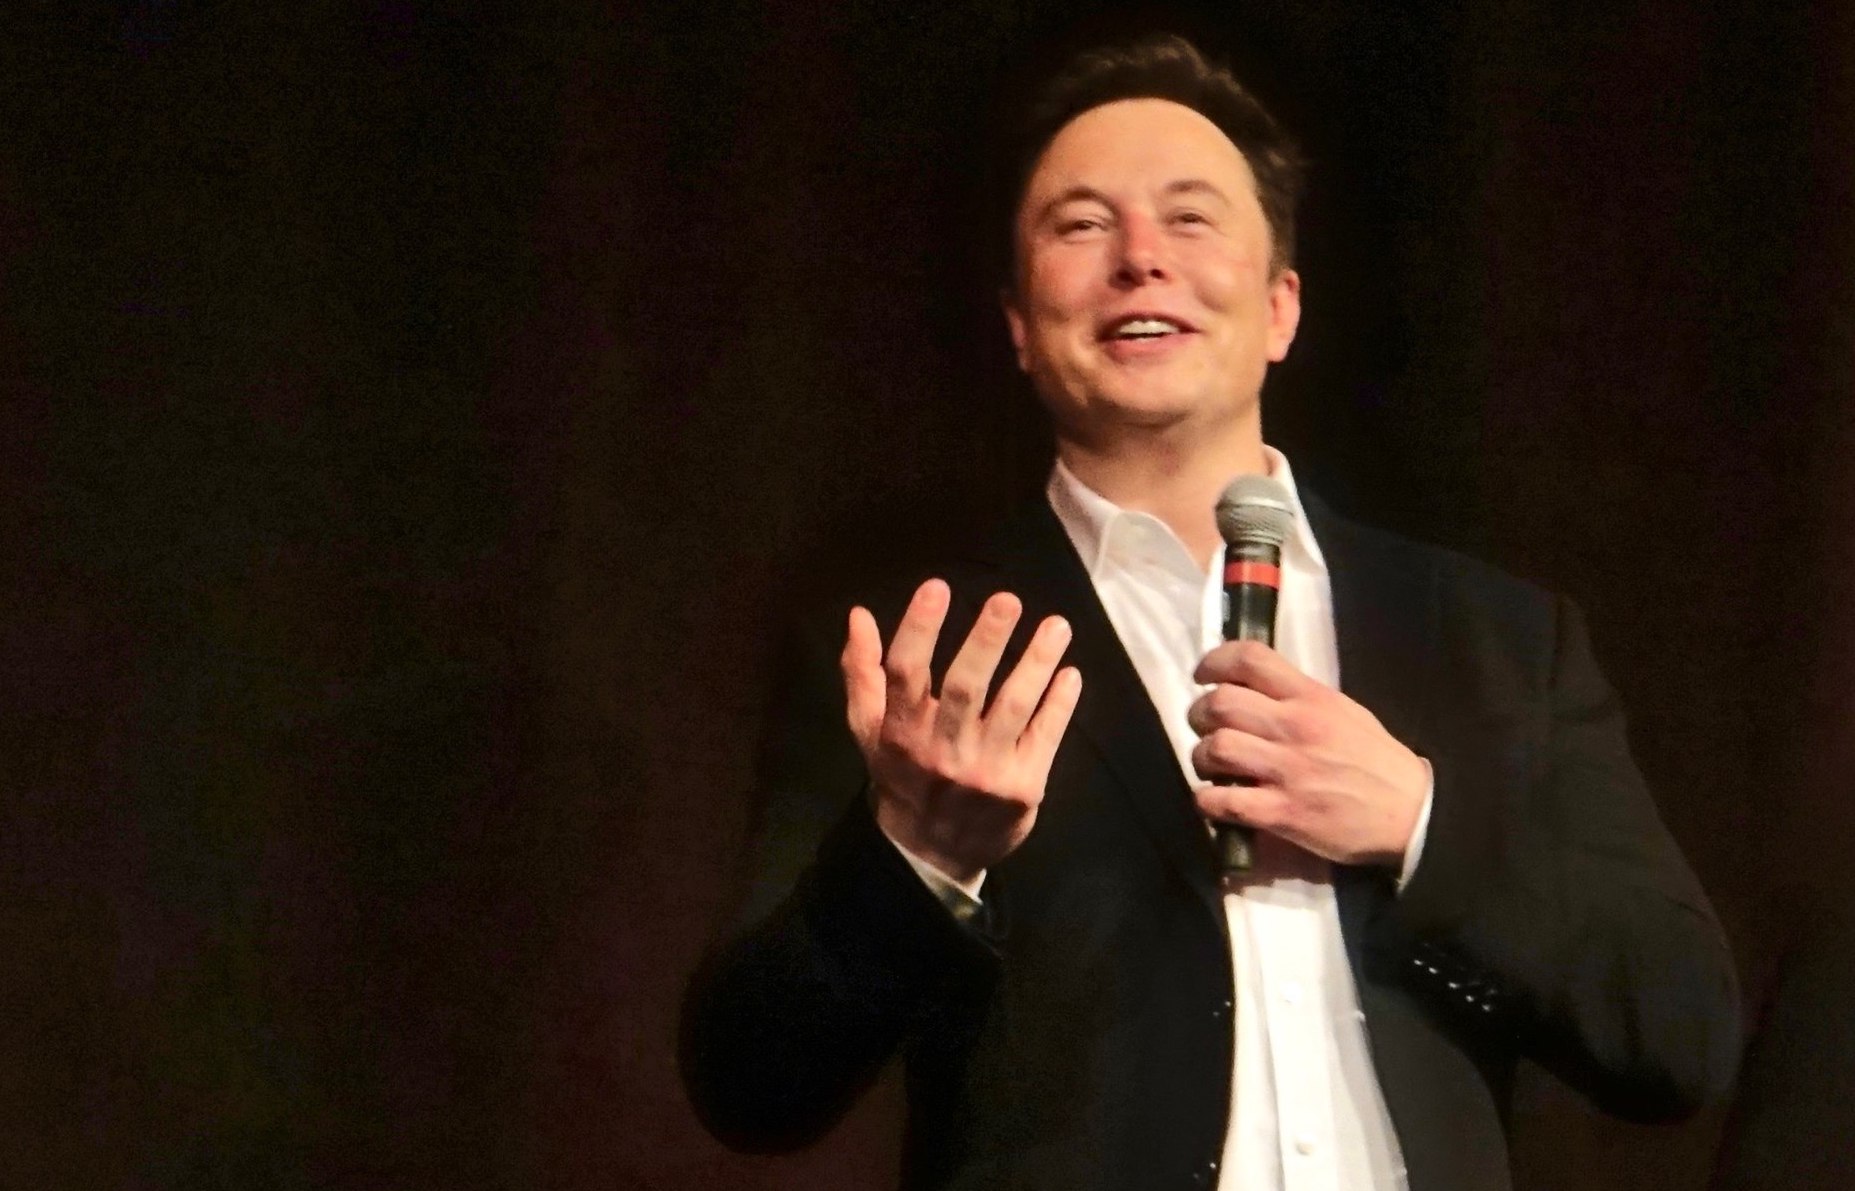 Tesla’s Elon Musk prevails in $420 ‘funding secured’ Tweet trial